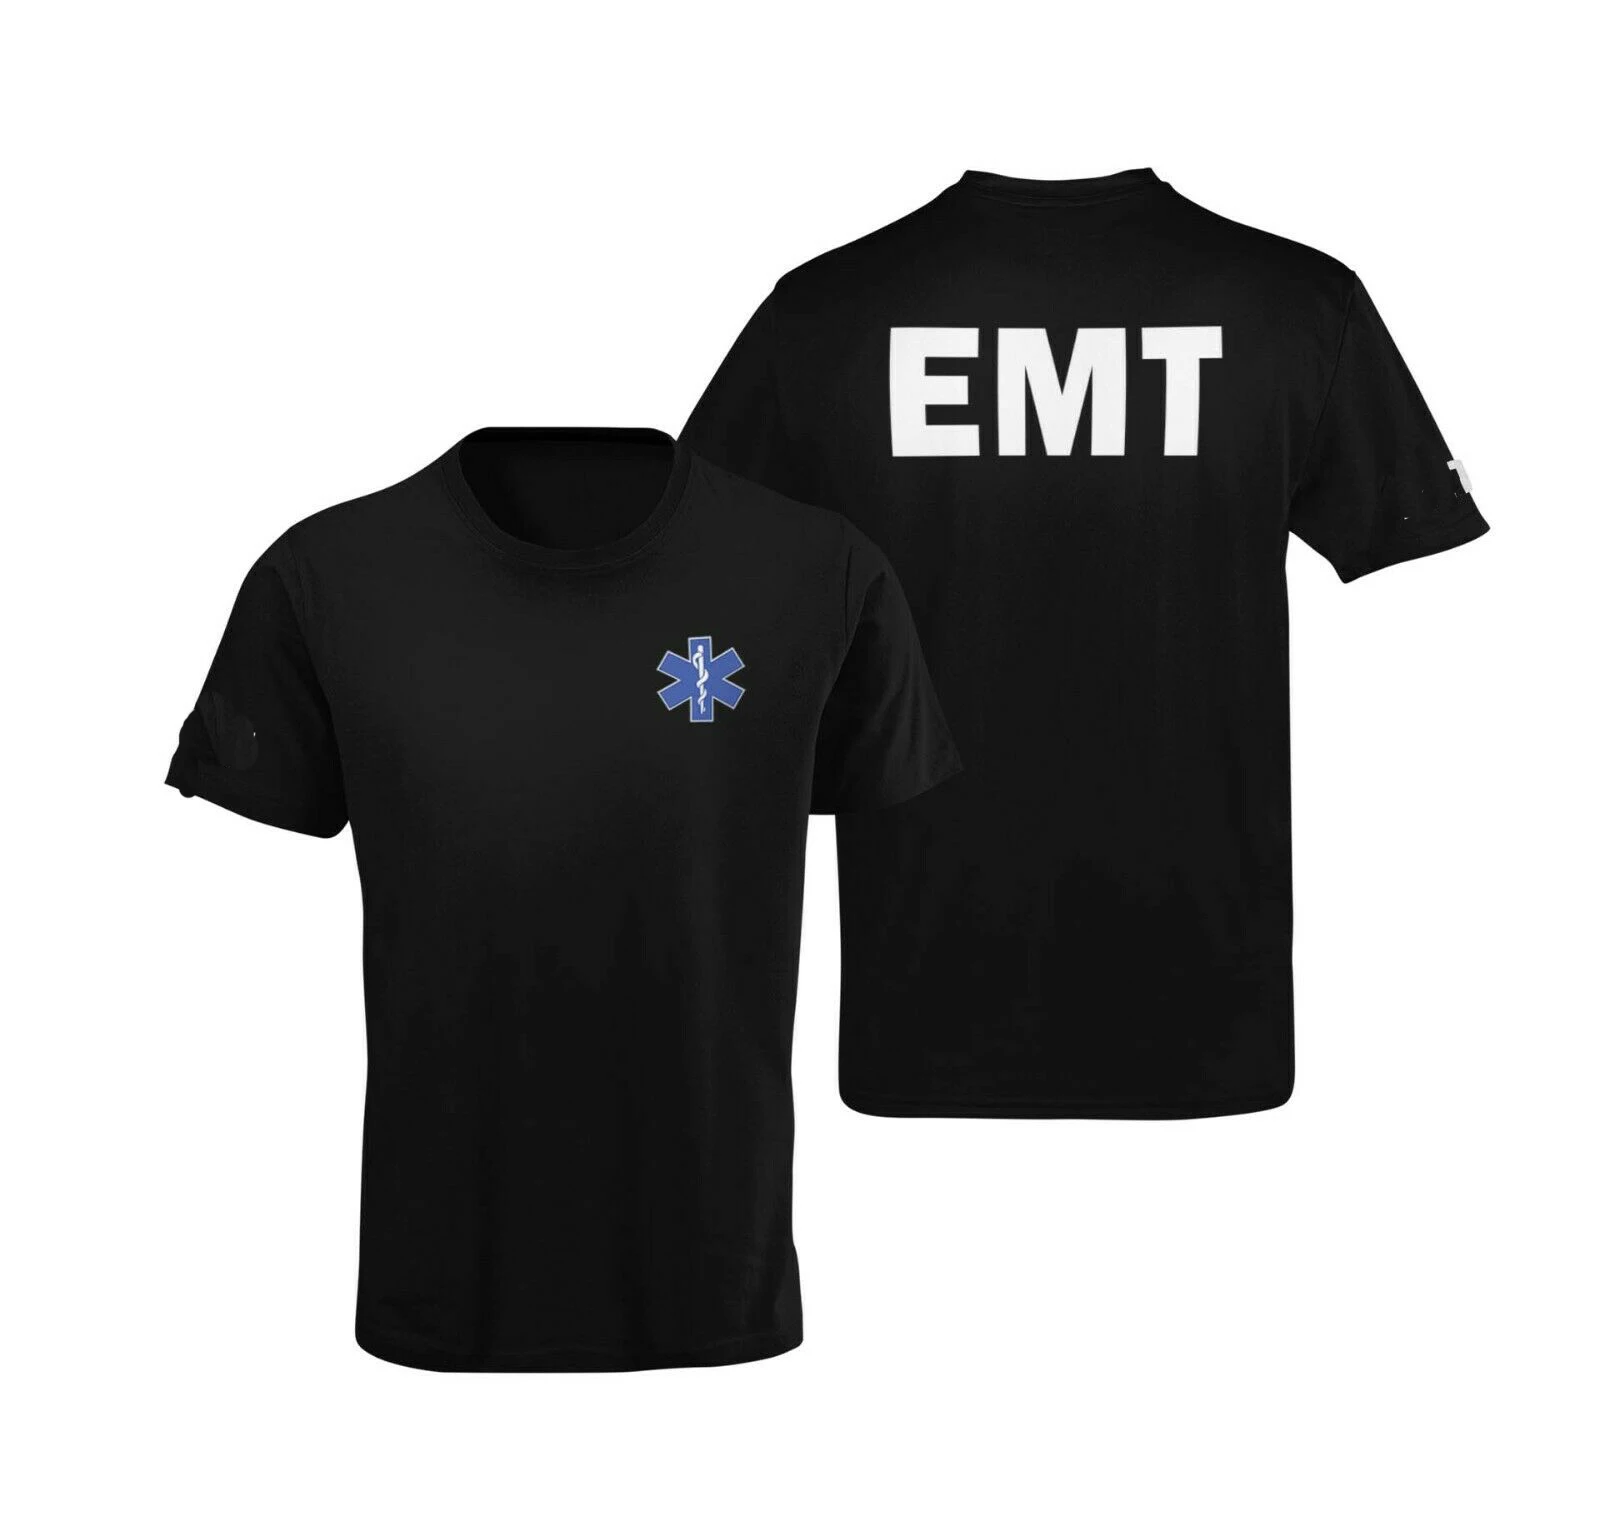 Basit Mektup EMT Yıldız Hayat Baskılı Paramedik T-Shirt. Yaz Pamuk O-Boyun kısa kollu erkek tişört Yeni S-3XL